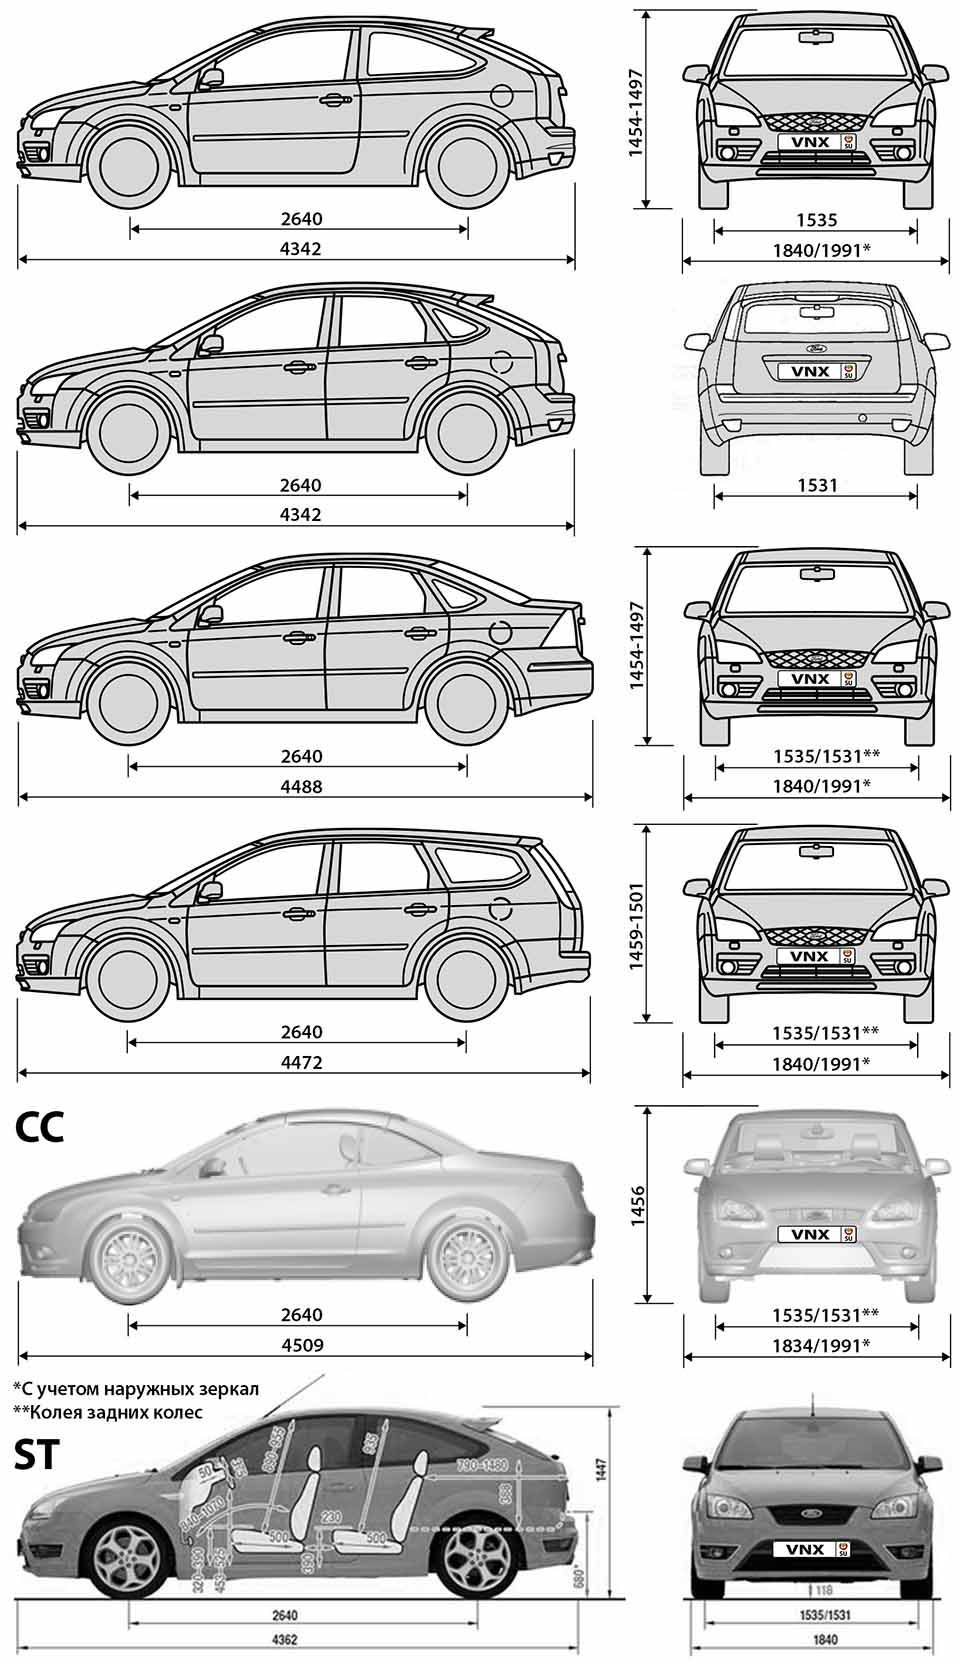 Габаритные размеры Форд Фокус 2 до рестайлинга 2004-2008 (dimensions Ford Focus II)